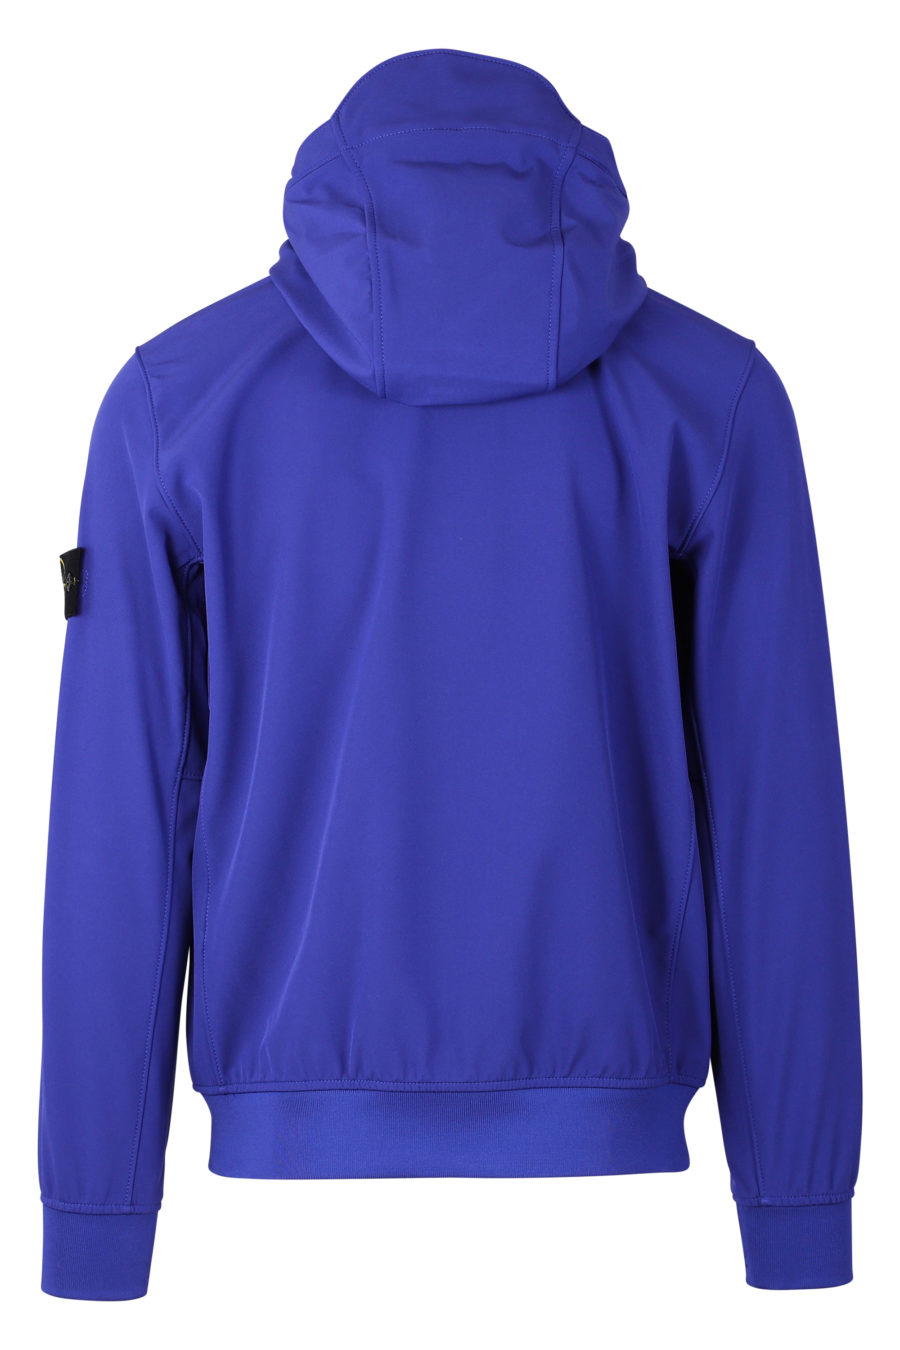 Chaqueta azul con capucha y logotipo parche - IMG 9348